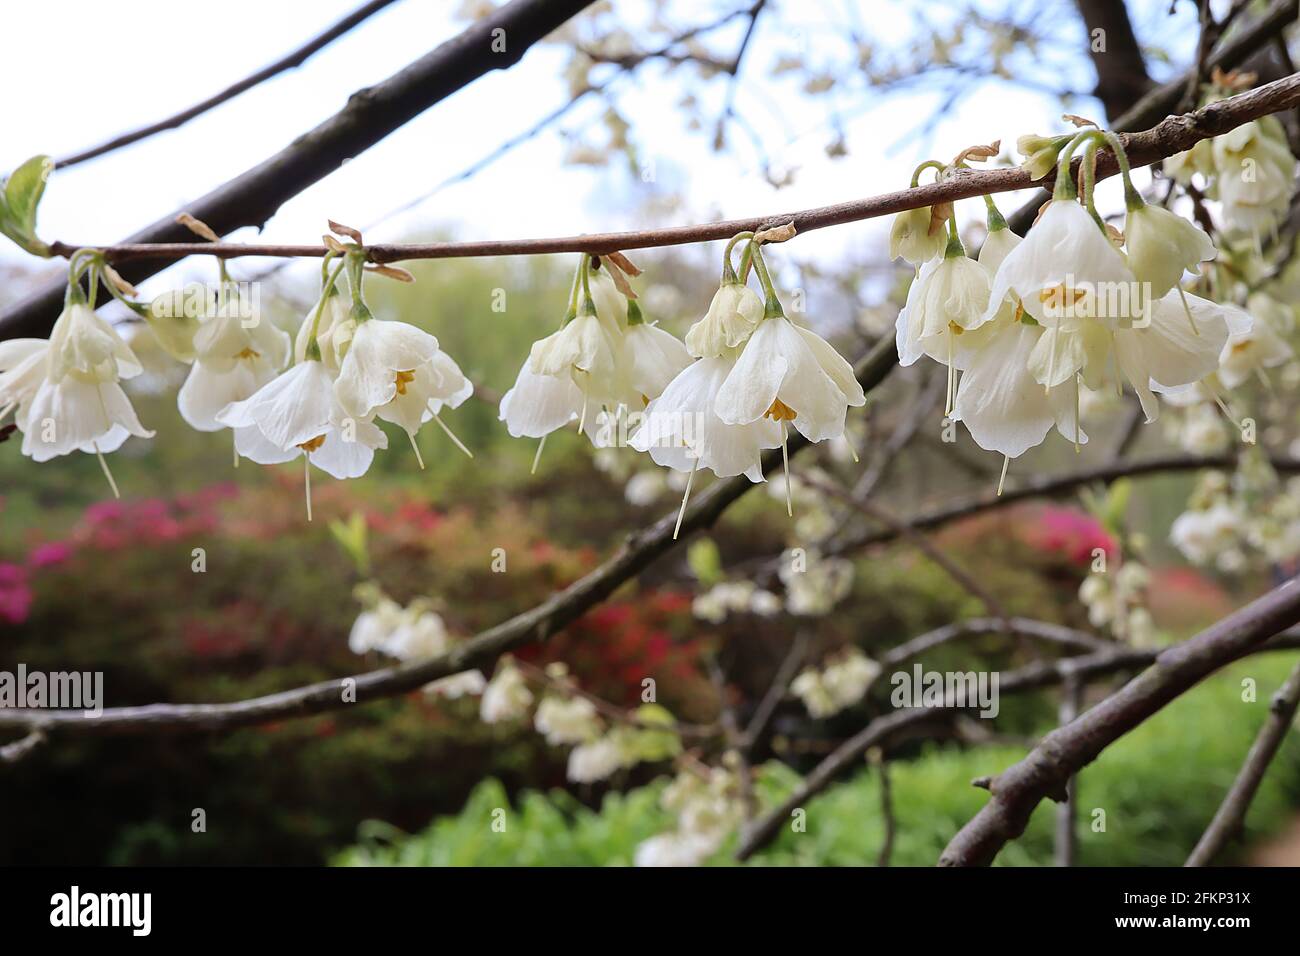 Styrax japonicus Snowbell tree – grappoli in stocchi profumati fiori a forma di campana lungo rami senza foglie, maggio, Inghilterra, Regno Unito Foto Stock